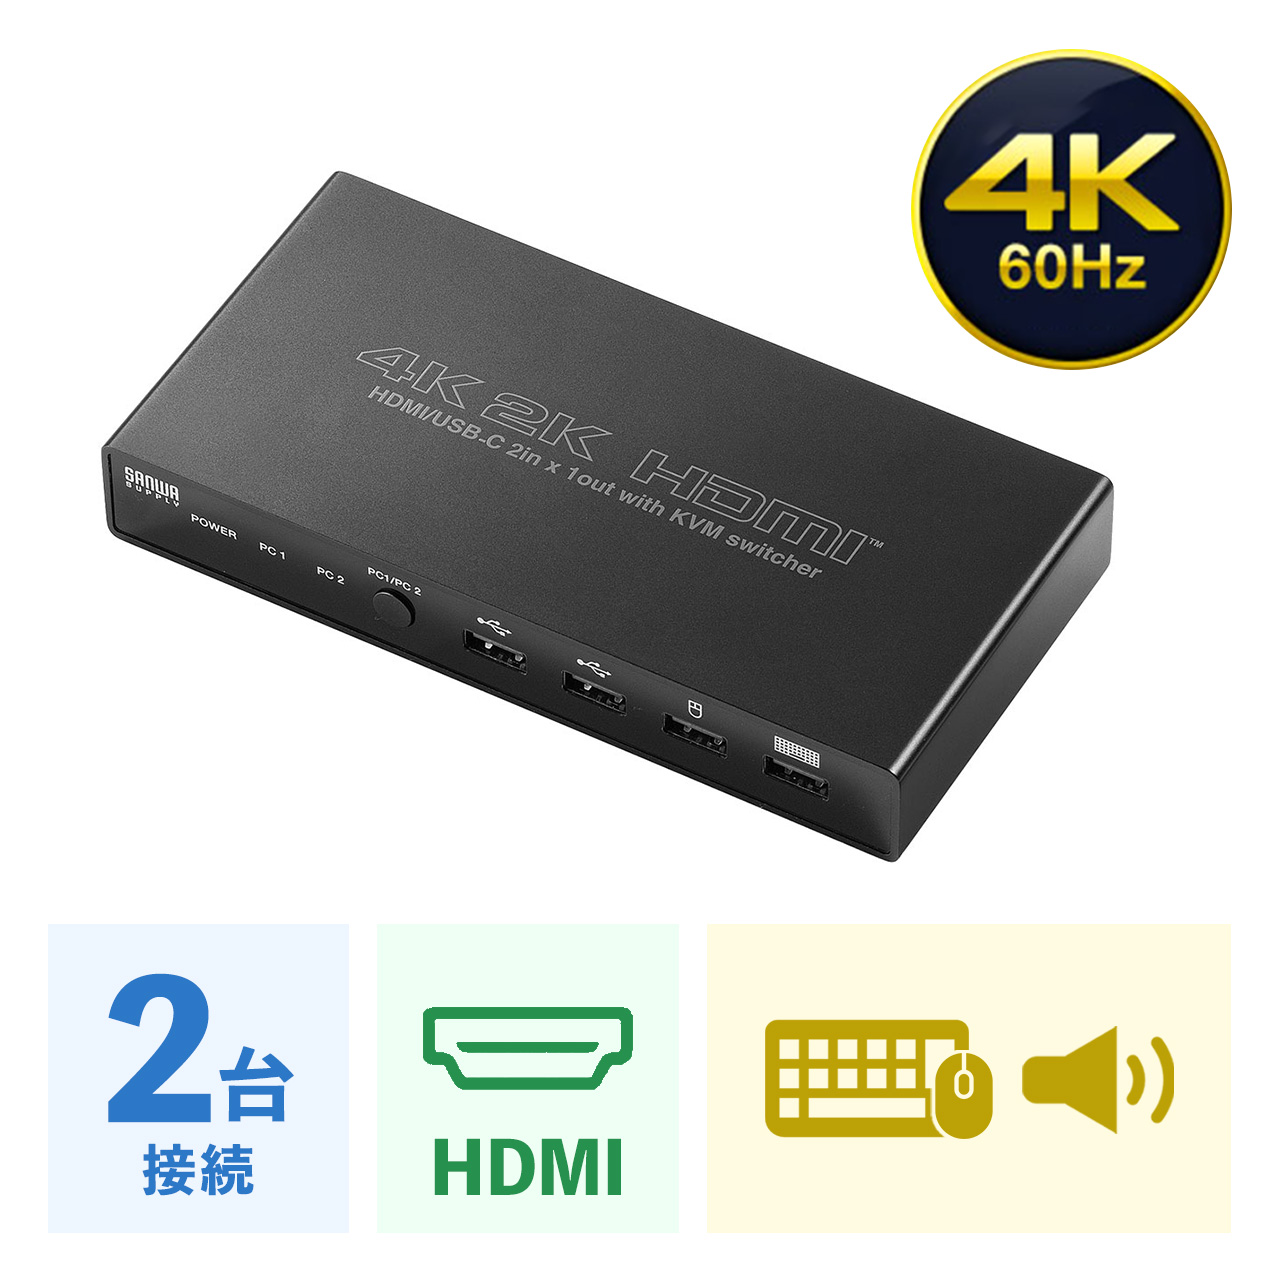 【ビジネス応援セール】USB Type-C/HDMI パソコン切替器 2台切替 KVMスイッチ ドッキングステーション USB PD対応 USBキーボード USBマウス 400-SW037